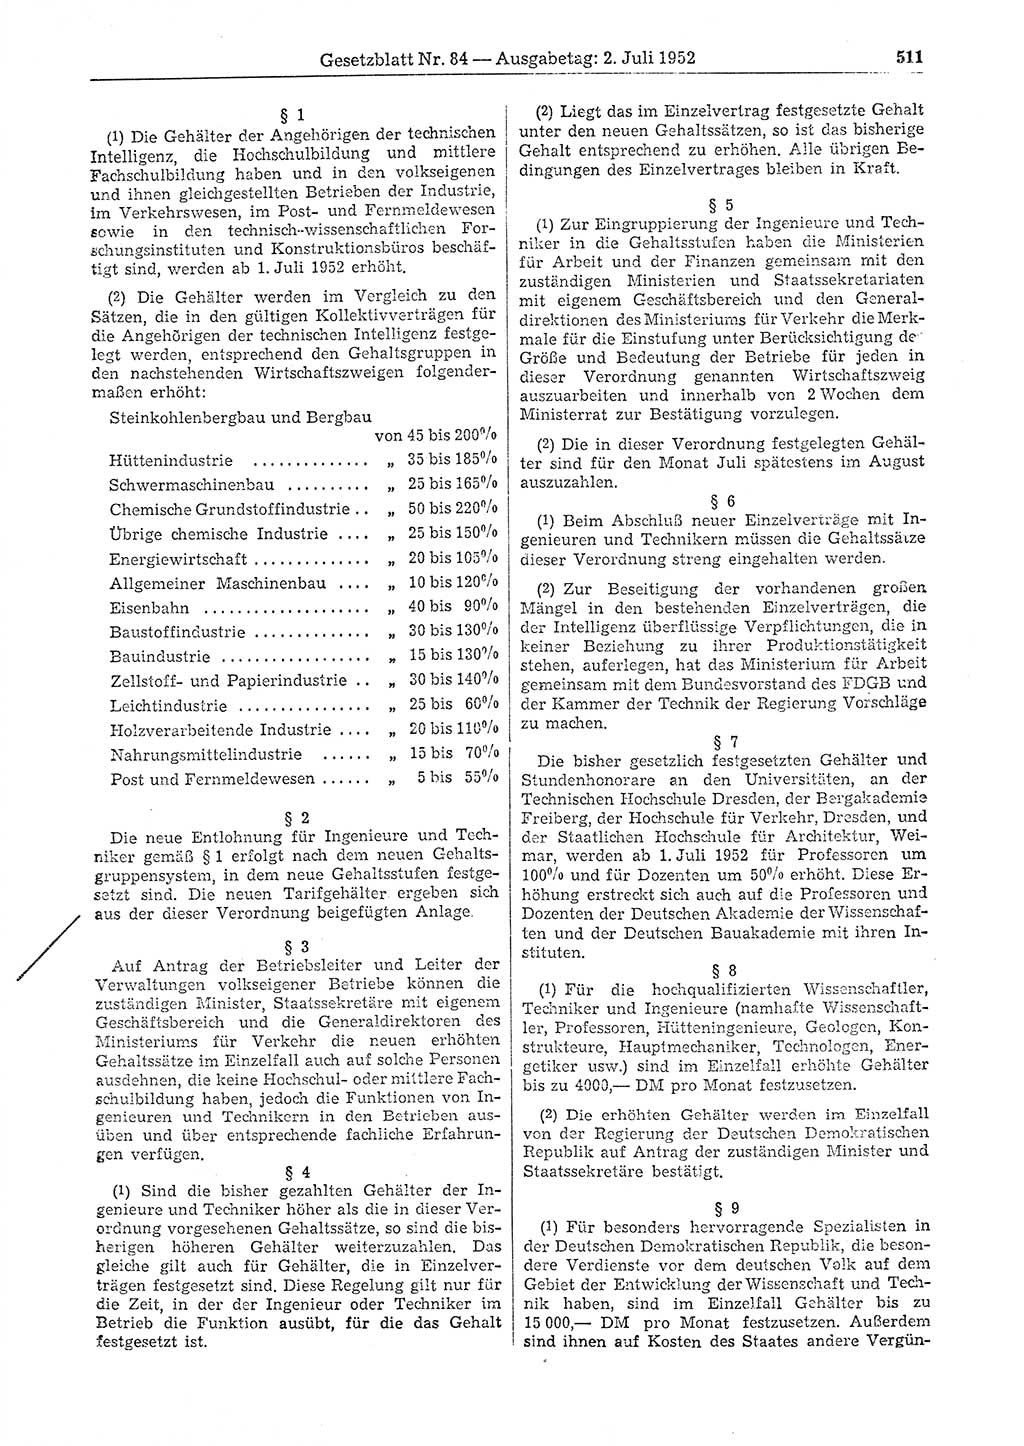 Gesetzblatt (GBl.) der Deutschen Demokratischen Republik (DDR) 1952, Seite 511 (GBl. DDR 1952, S. 511)